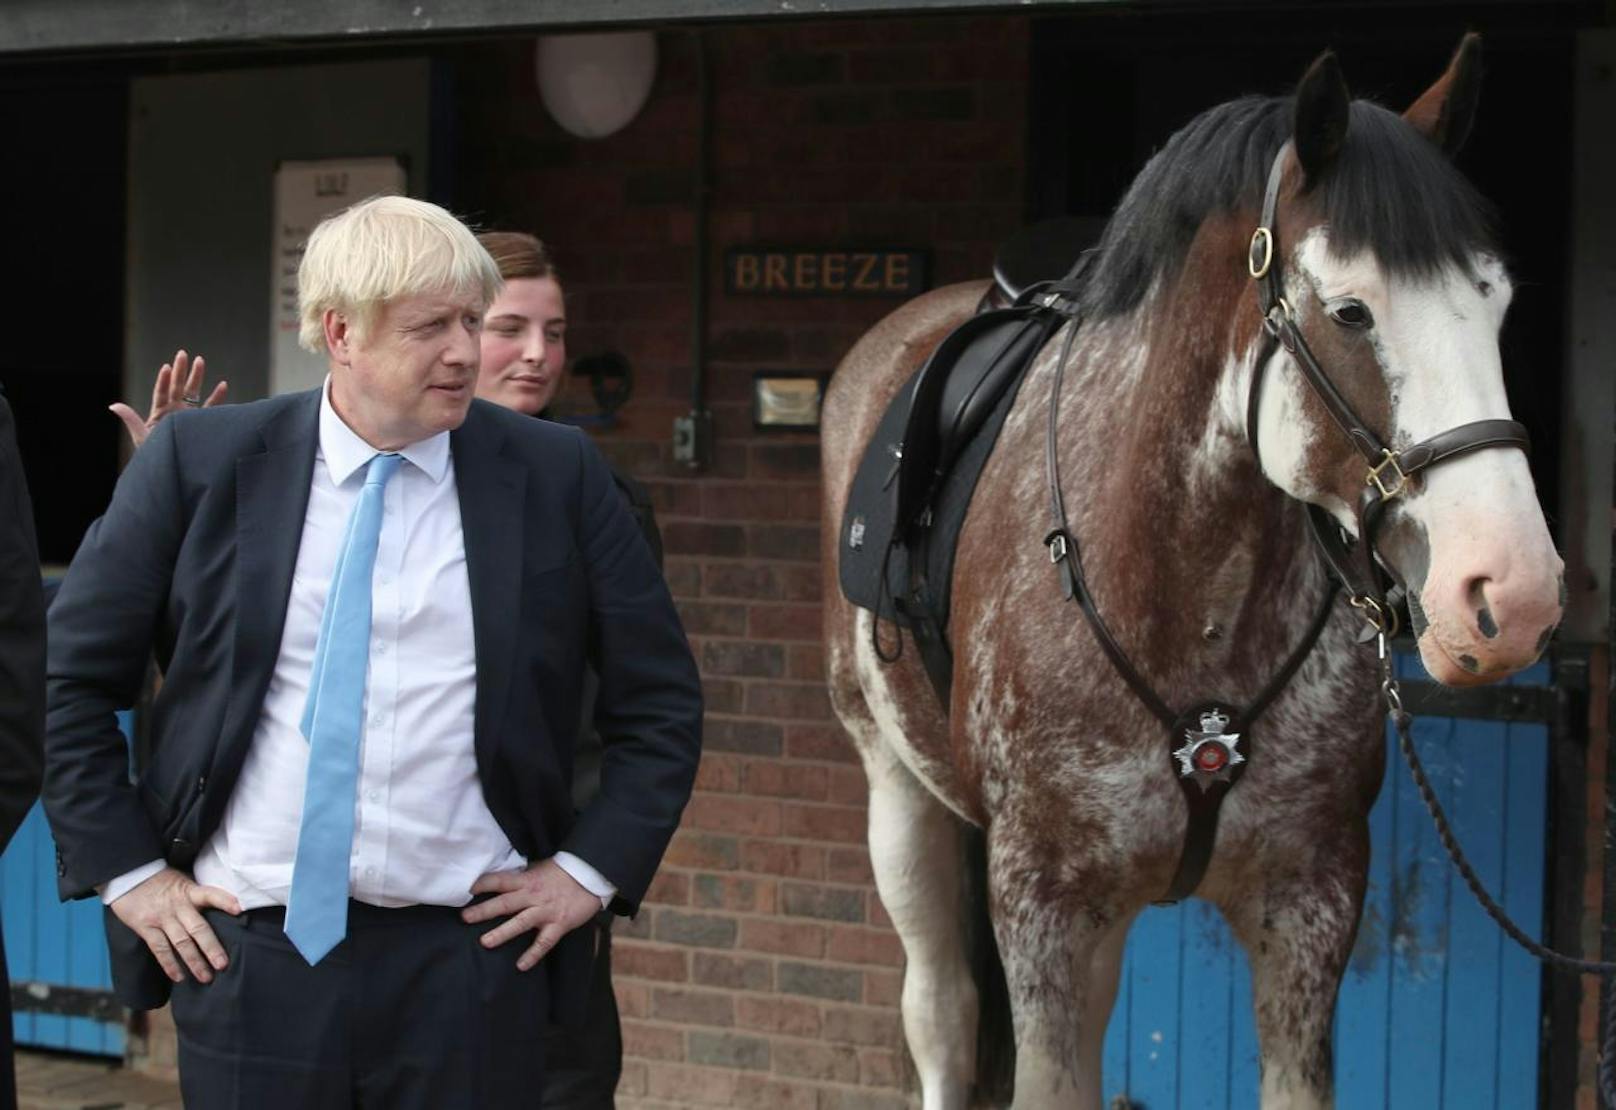 Der britische Premierminister Boris Johnson wirkt eher skeptisch gegenüber den edlen Vierbeinern.